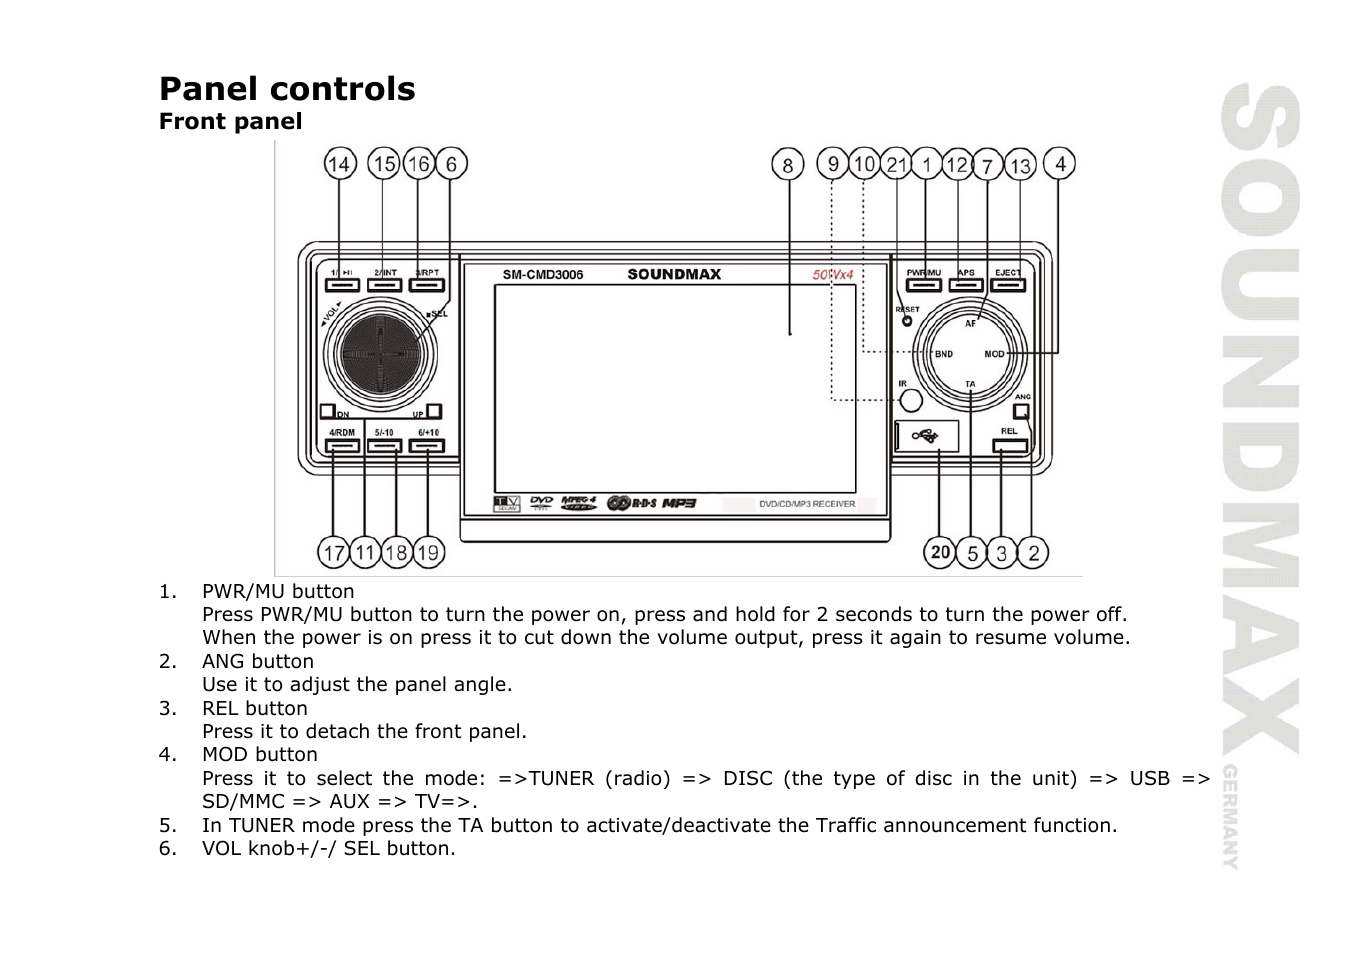 Инструкция к магнитоле soundmax sm cmd3011